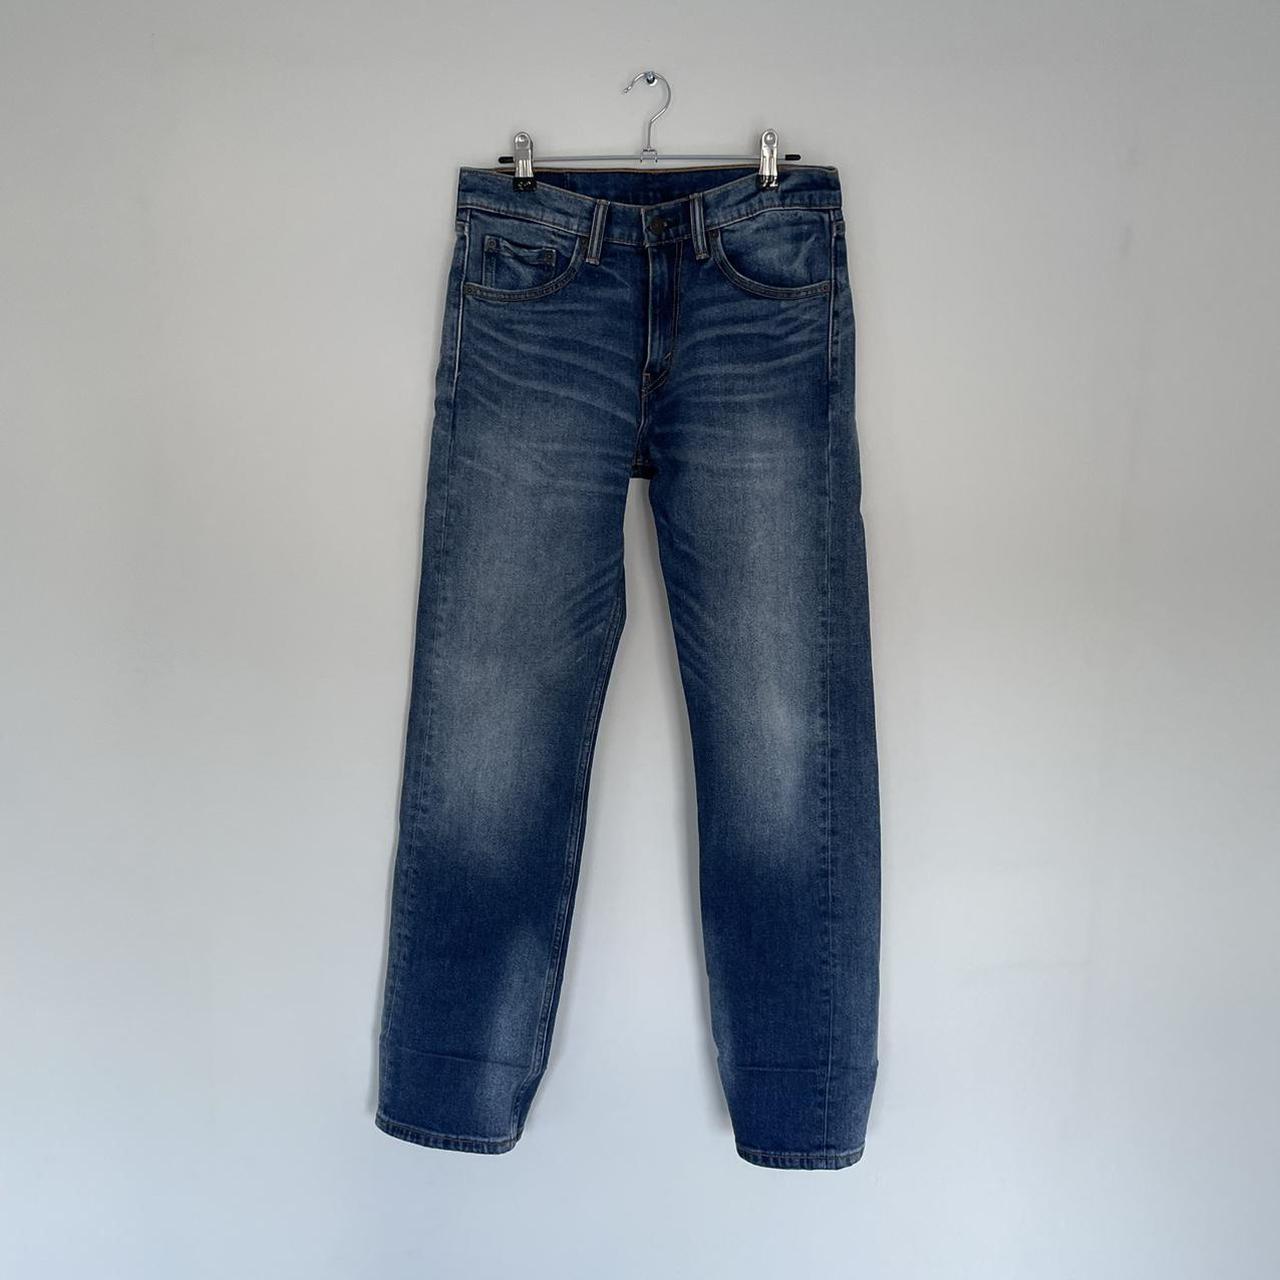 Vintage Levi's 505 jeans! W29 L30 :) ✨ #levis #505... - Depop